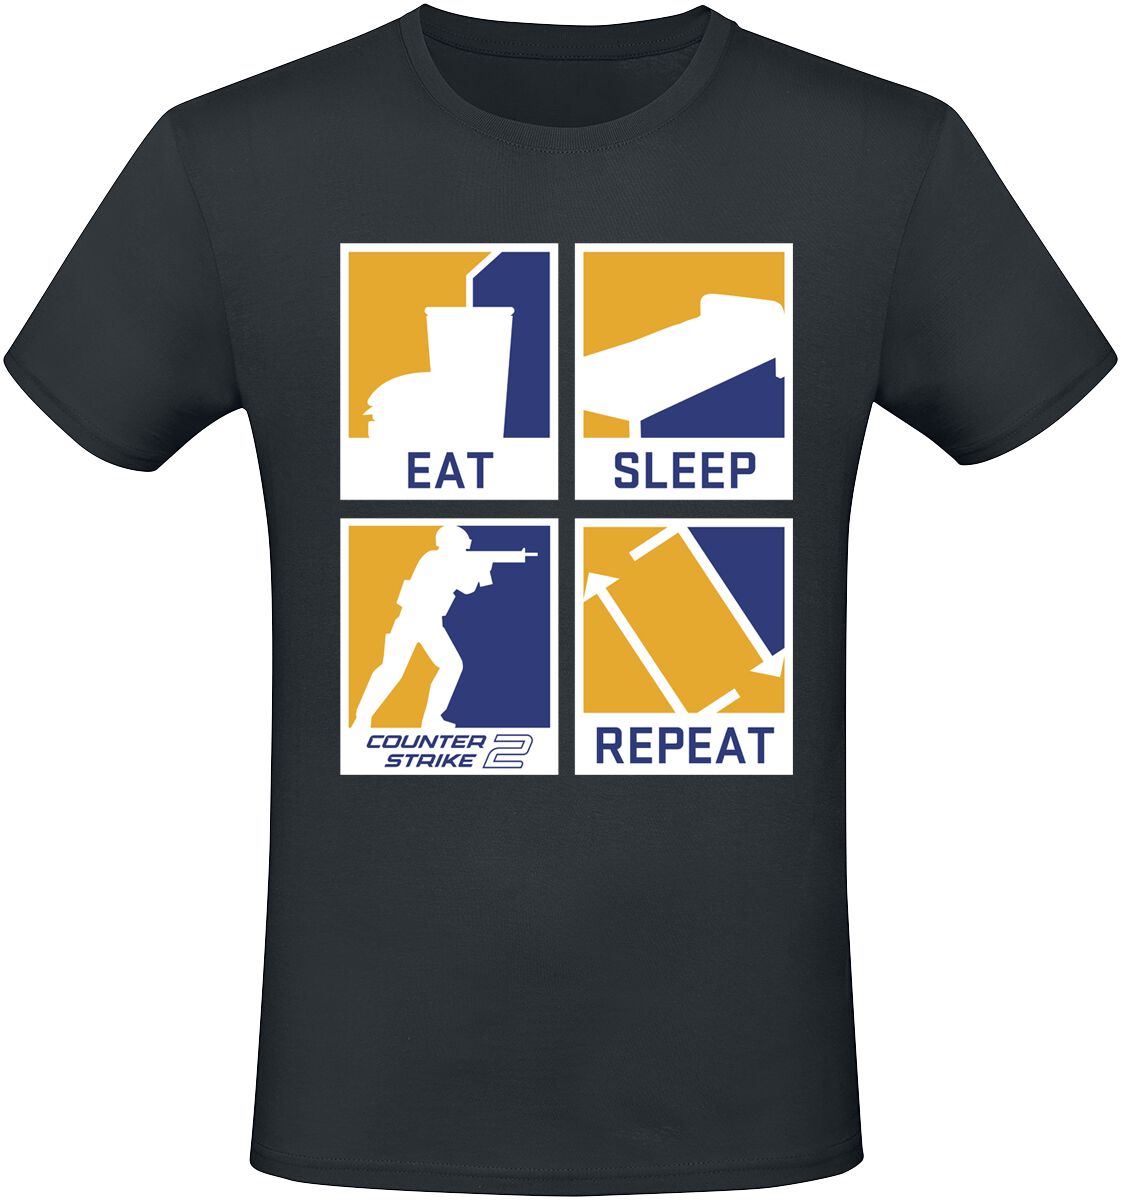 Counter-Strike - Gaming T-Shirt - 2 - Eat Sleep Repeat - S bis XXL - für Männer - Größe XXL - schwarz  - EMP exklusives Merchandise!